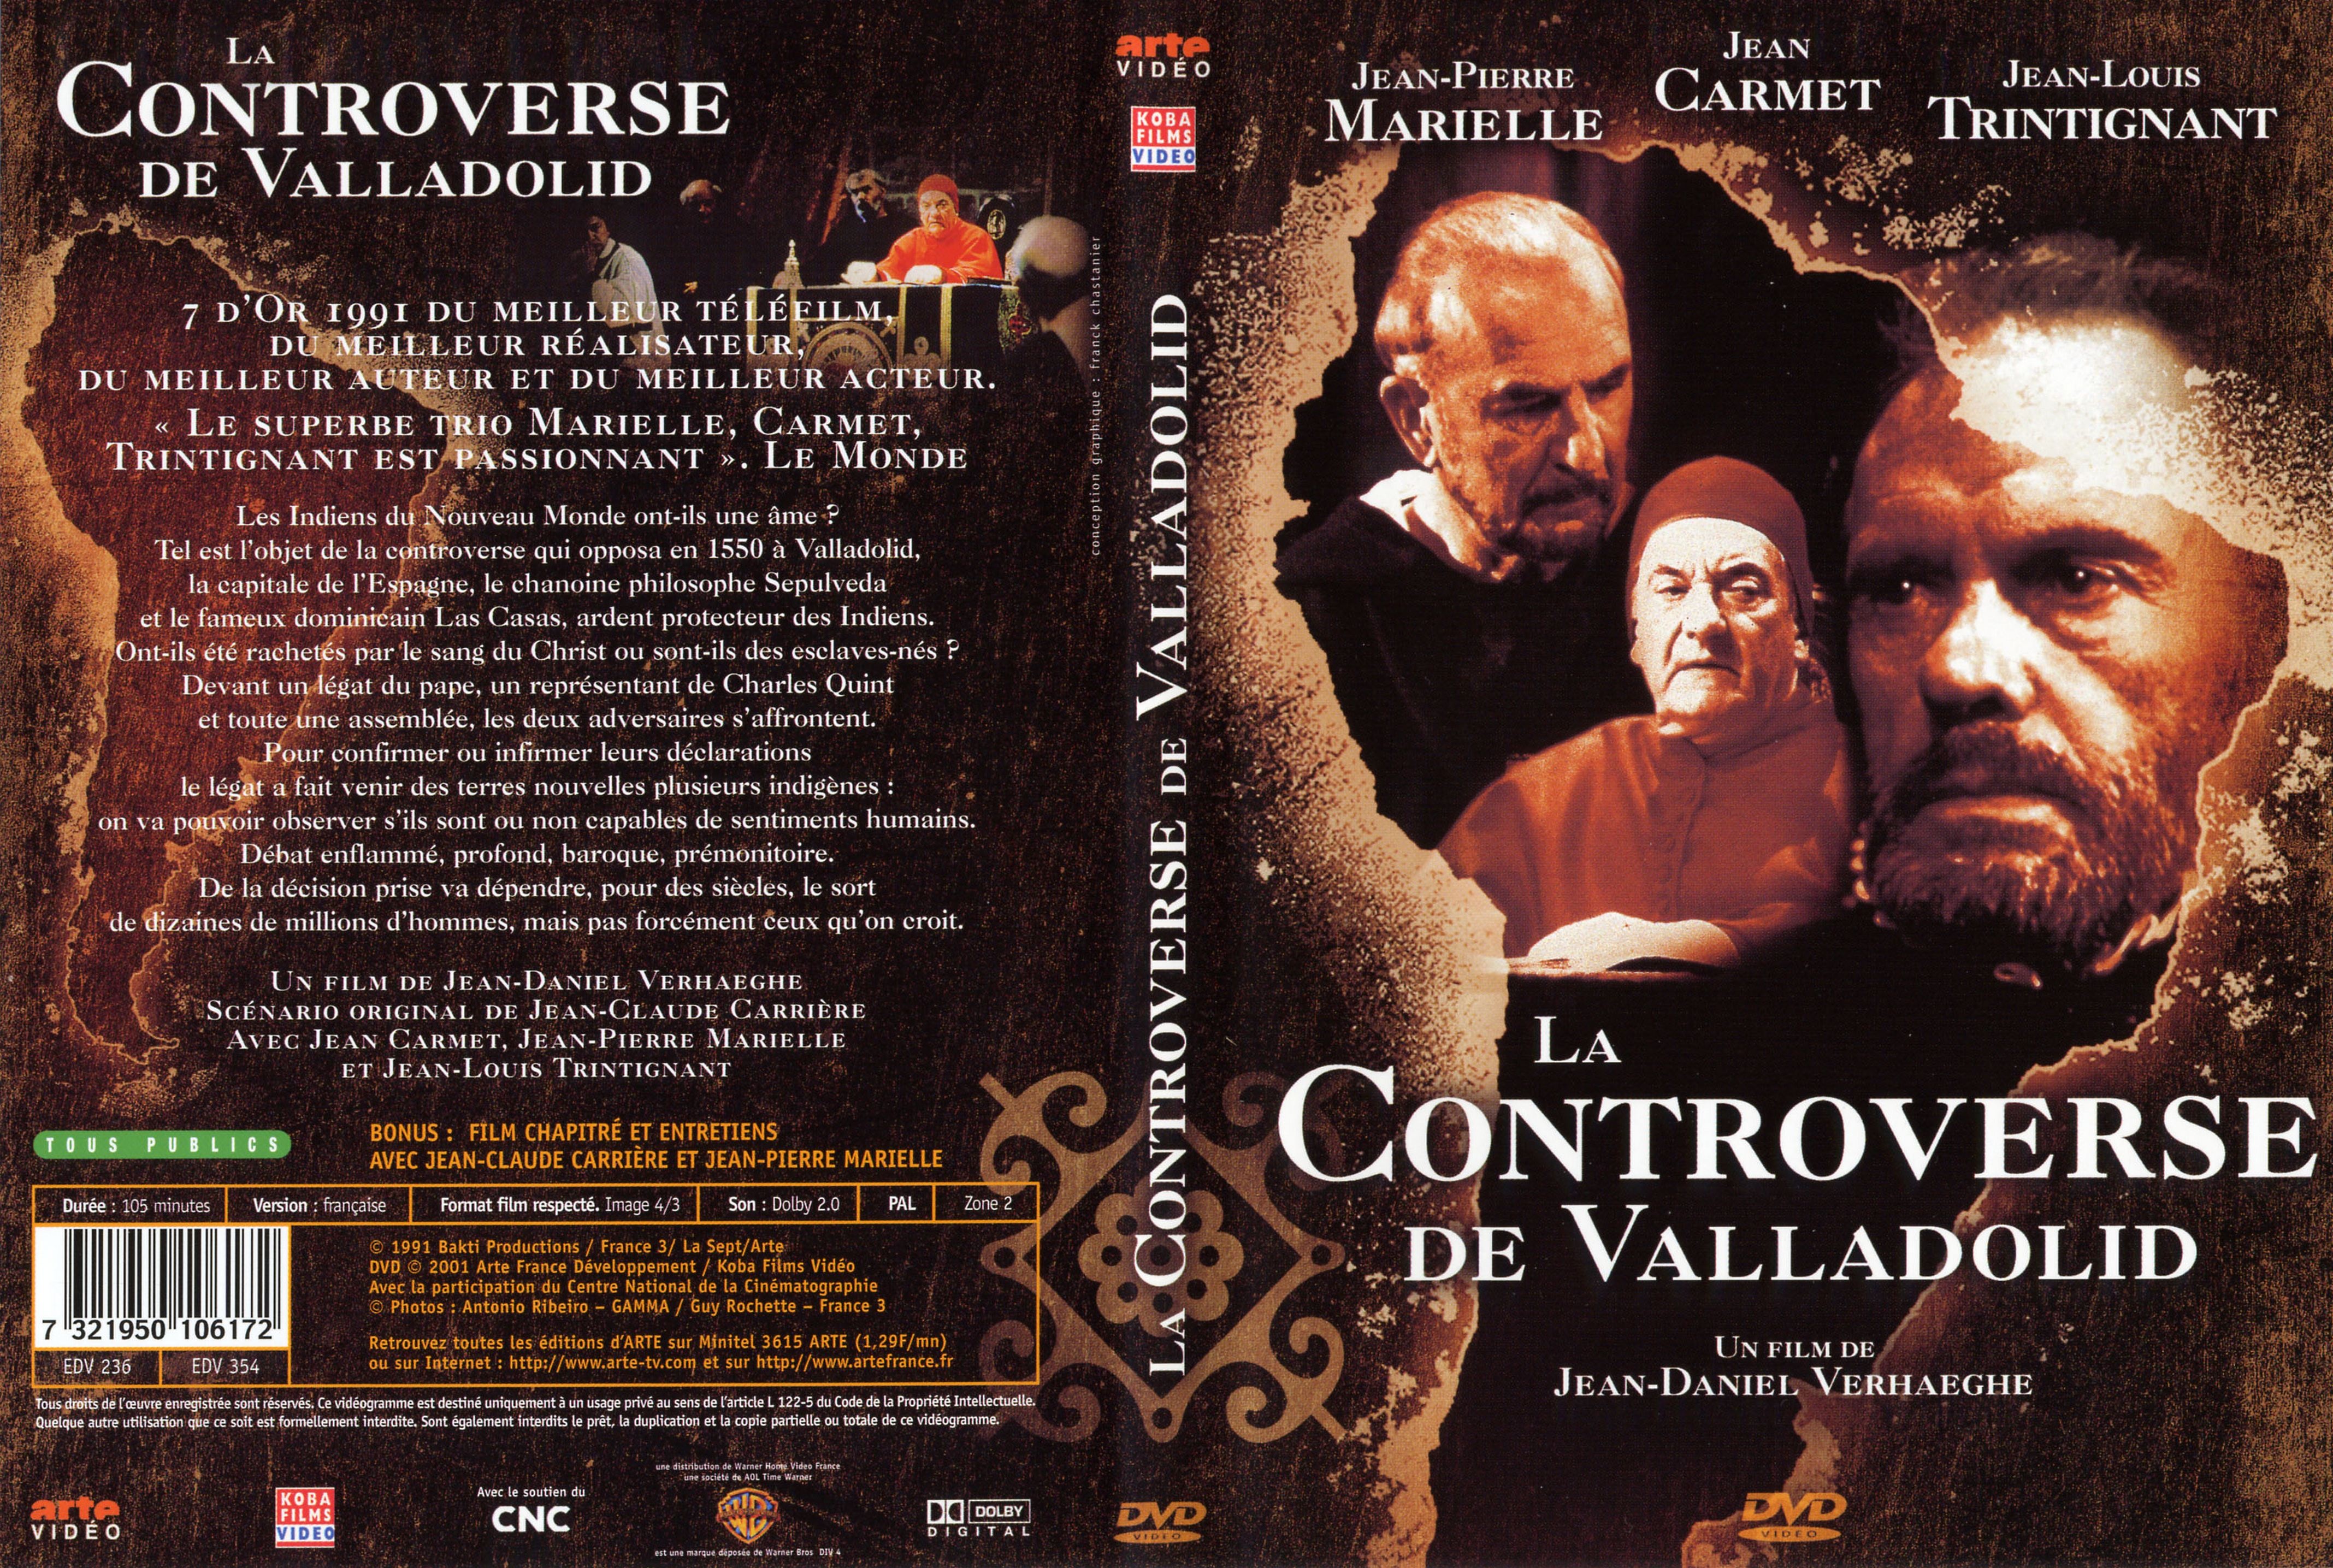 Jaquette DVD La controverse de Valladolid v2